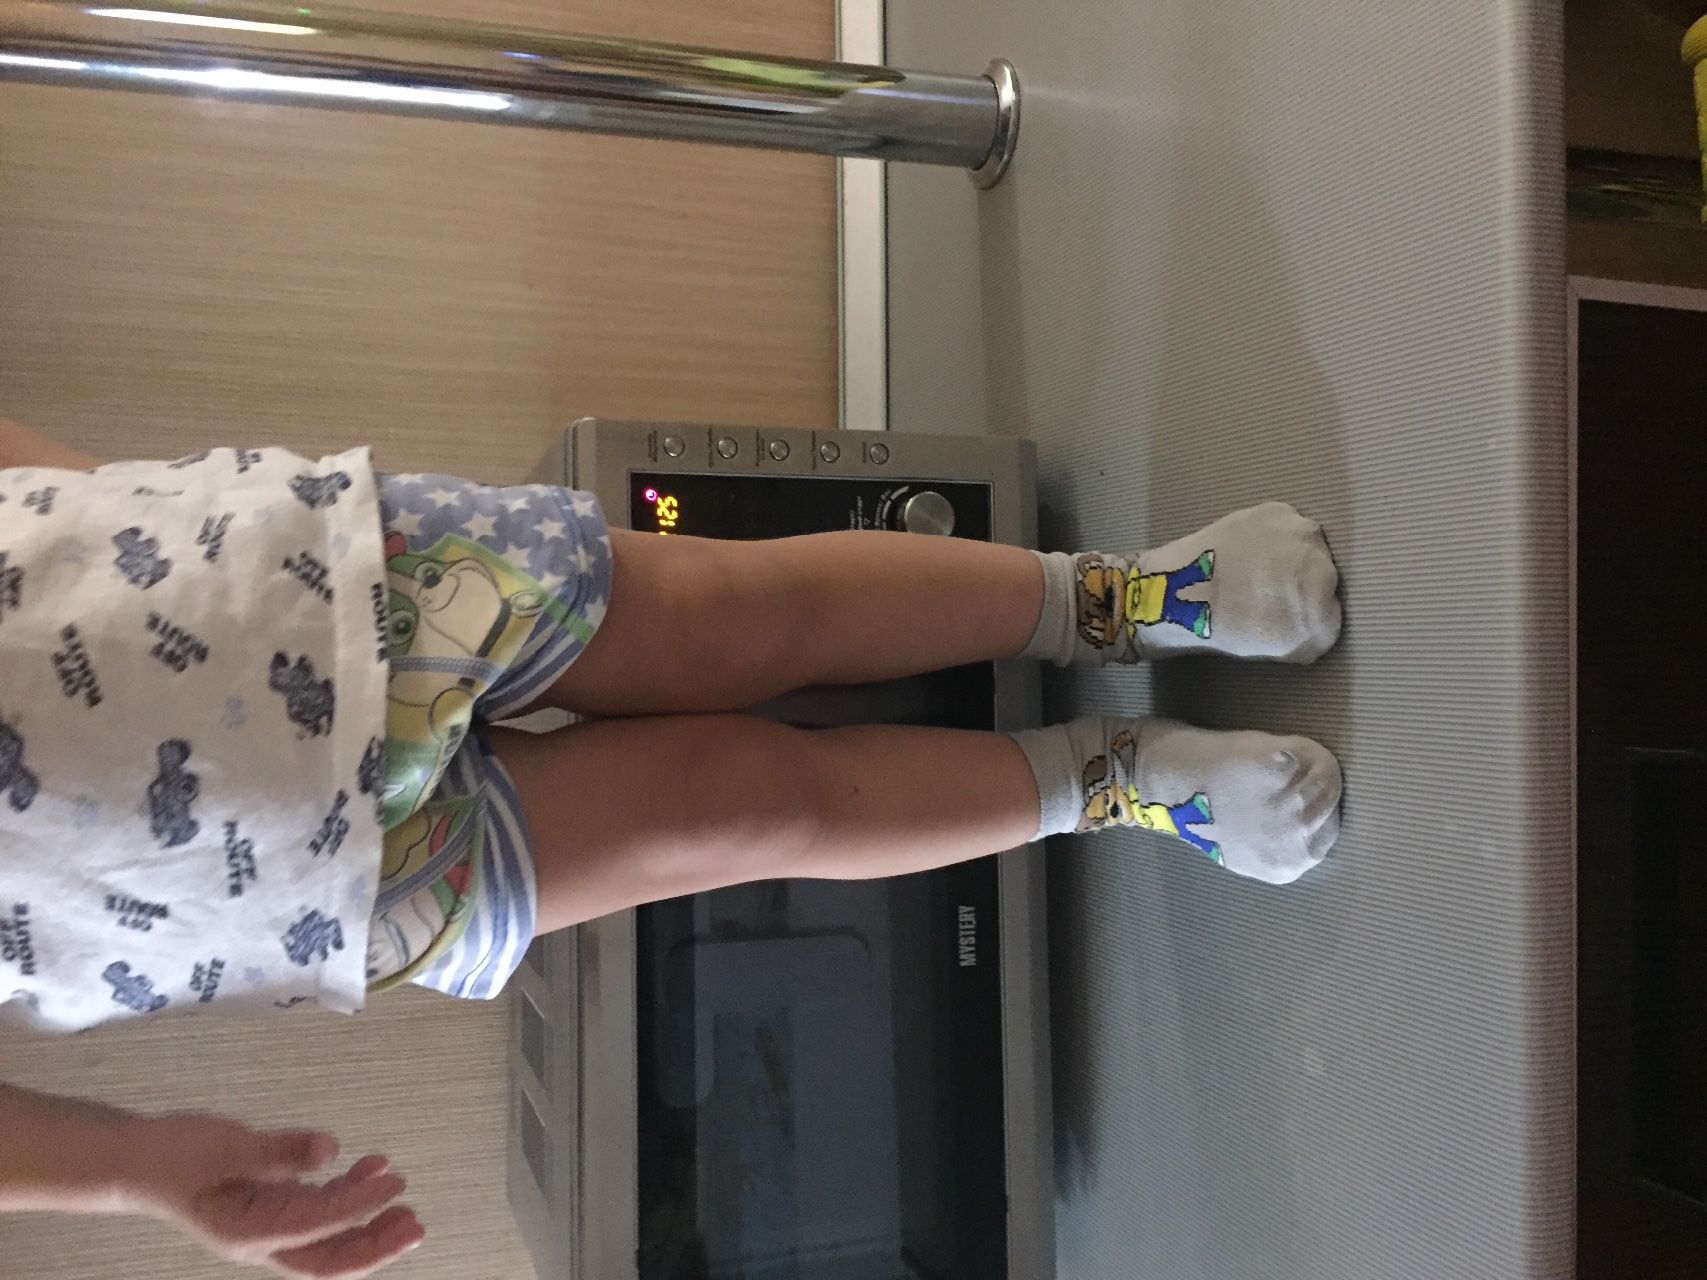 Х-образные ноги у ребенка 2 лет